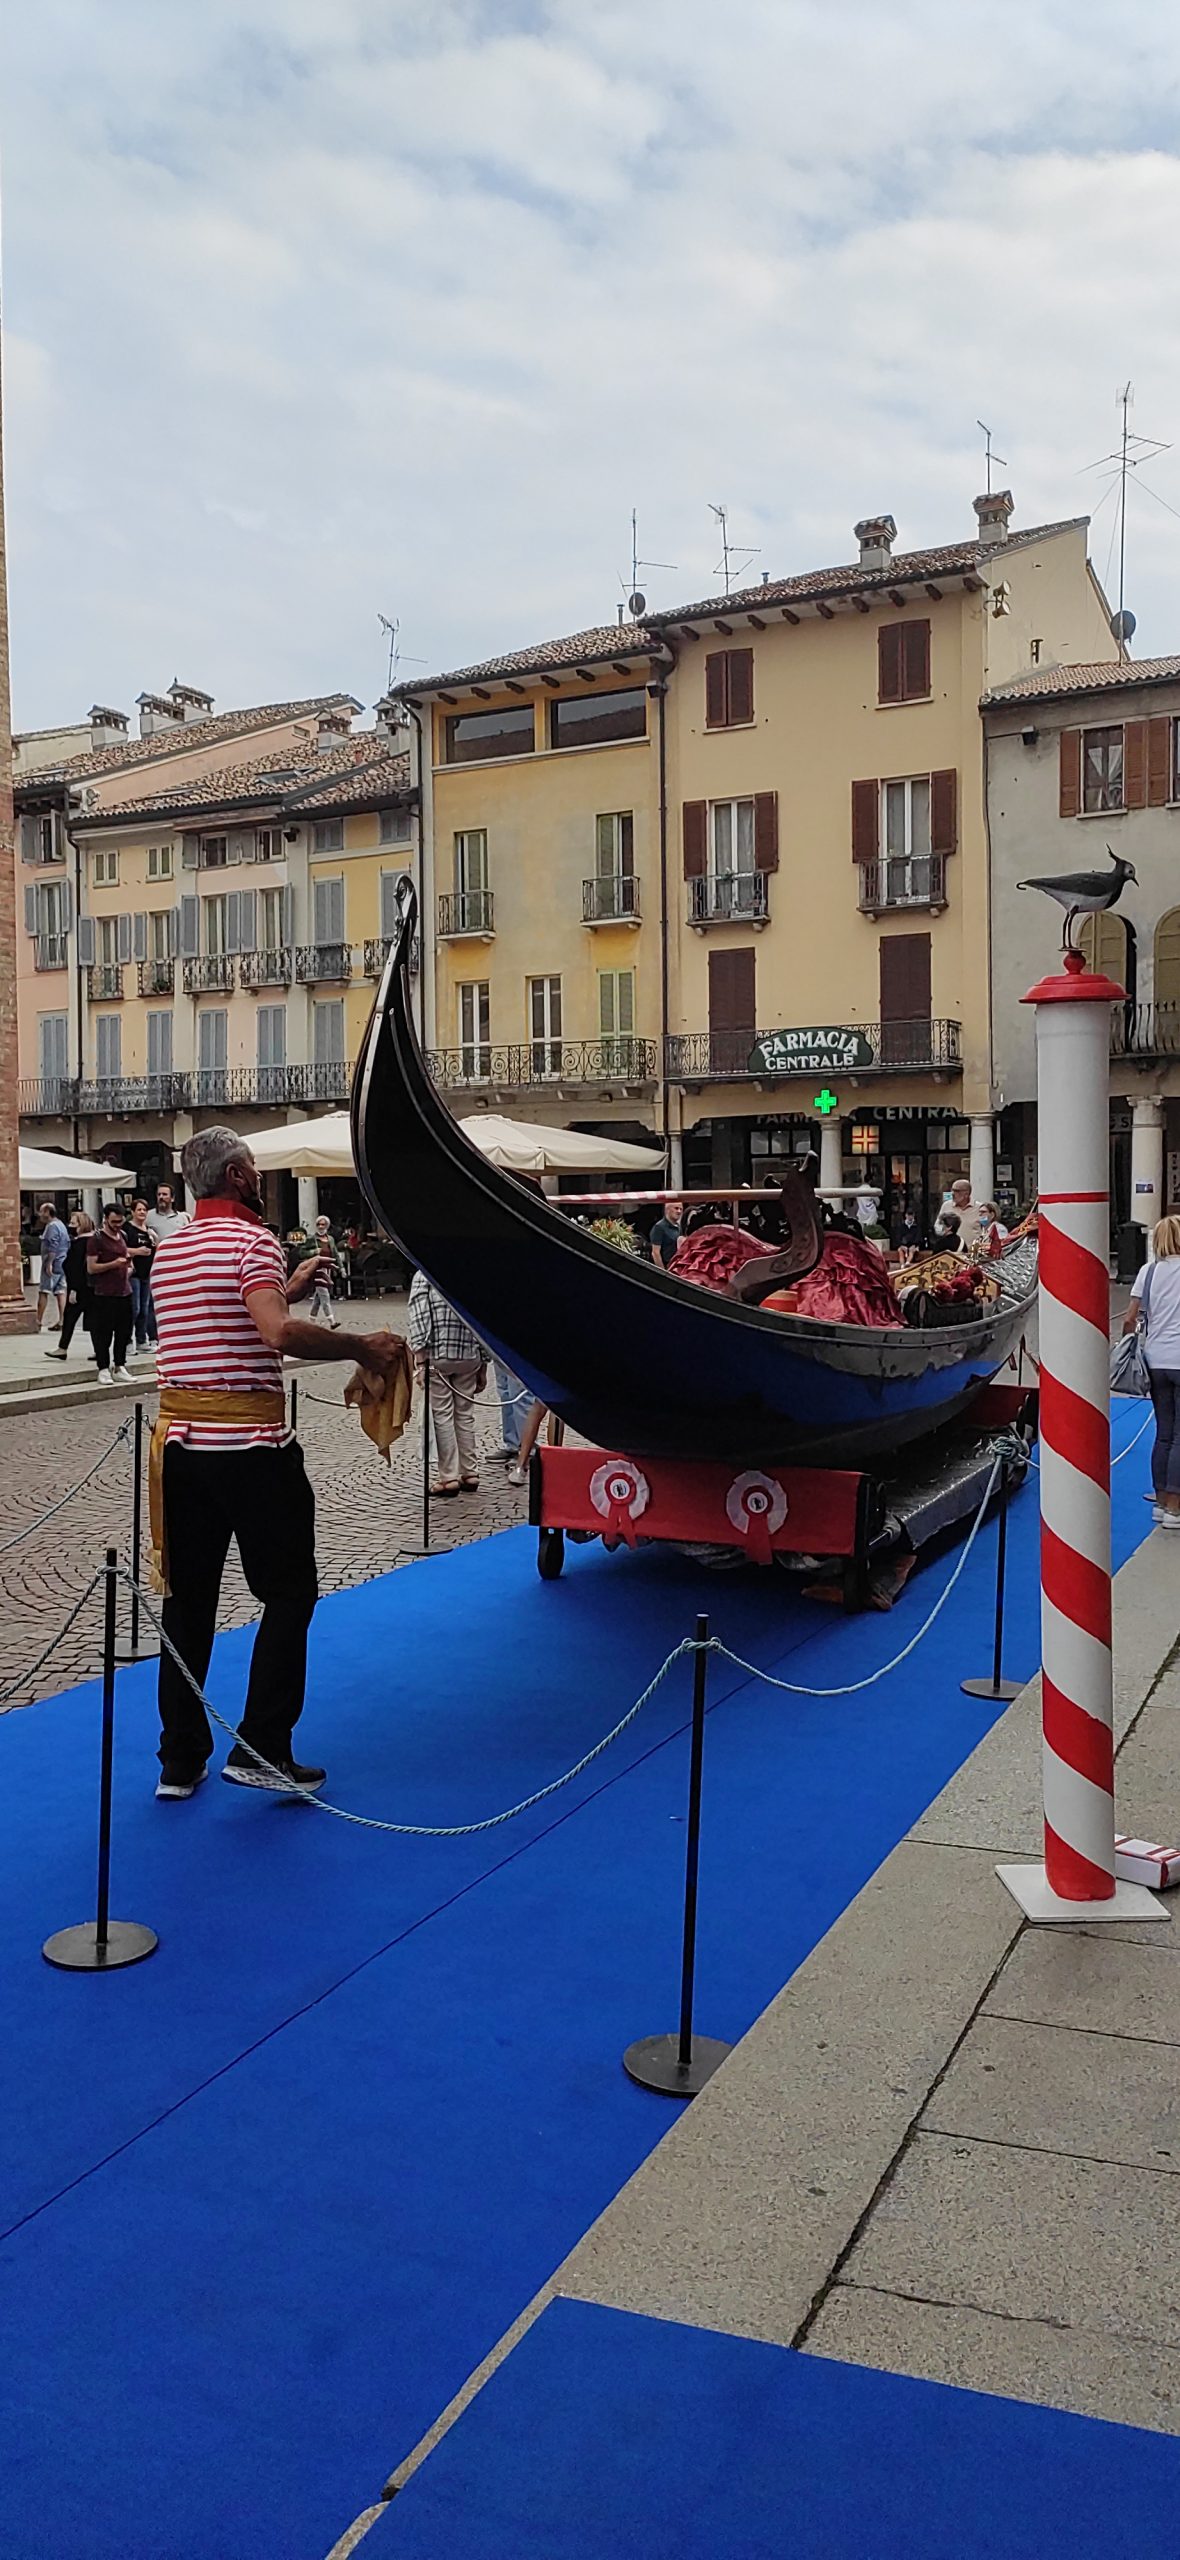 La gondola arrivata a Crema per festeggiare lo storico complenano di Venezia? Beh quando piove sarebbe utile per muoversi in certi scorci cittadini, no?